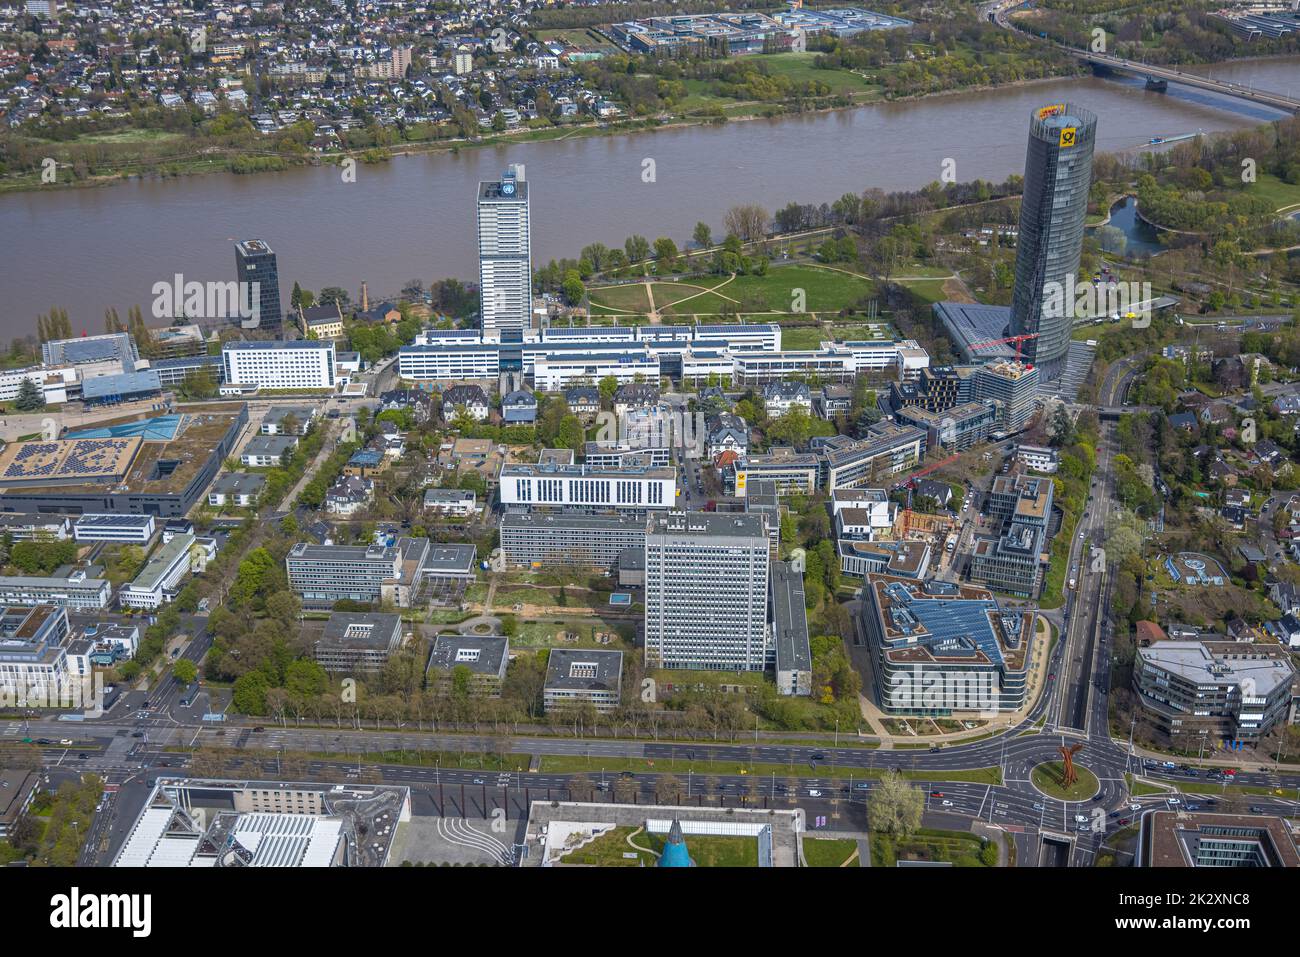 Vue aérienne, quartier fédéral avec la Tour de poste au Rhin, Deutsche Welle, Campus des Nations Unies avec Langer Eugen et ancien Bundestag allemand, Banque D'Images